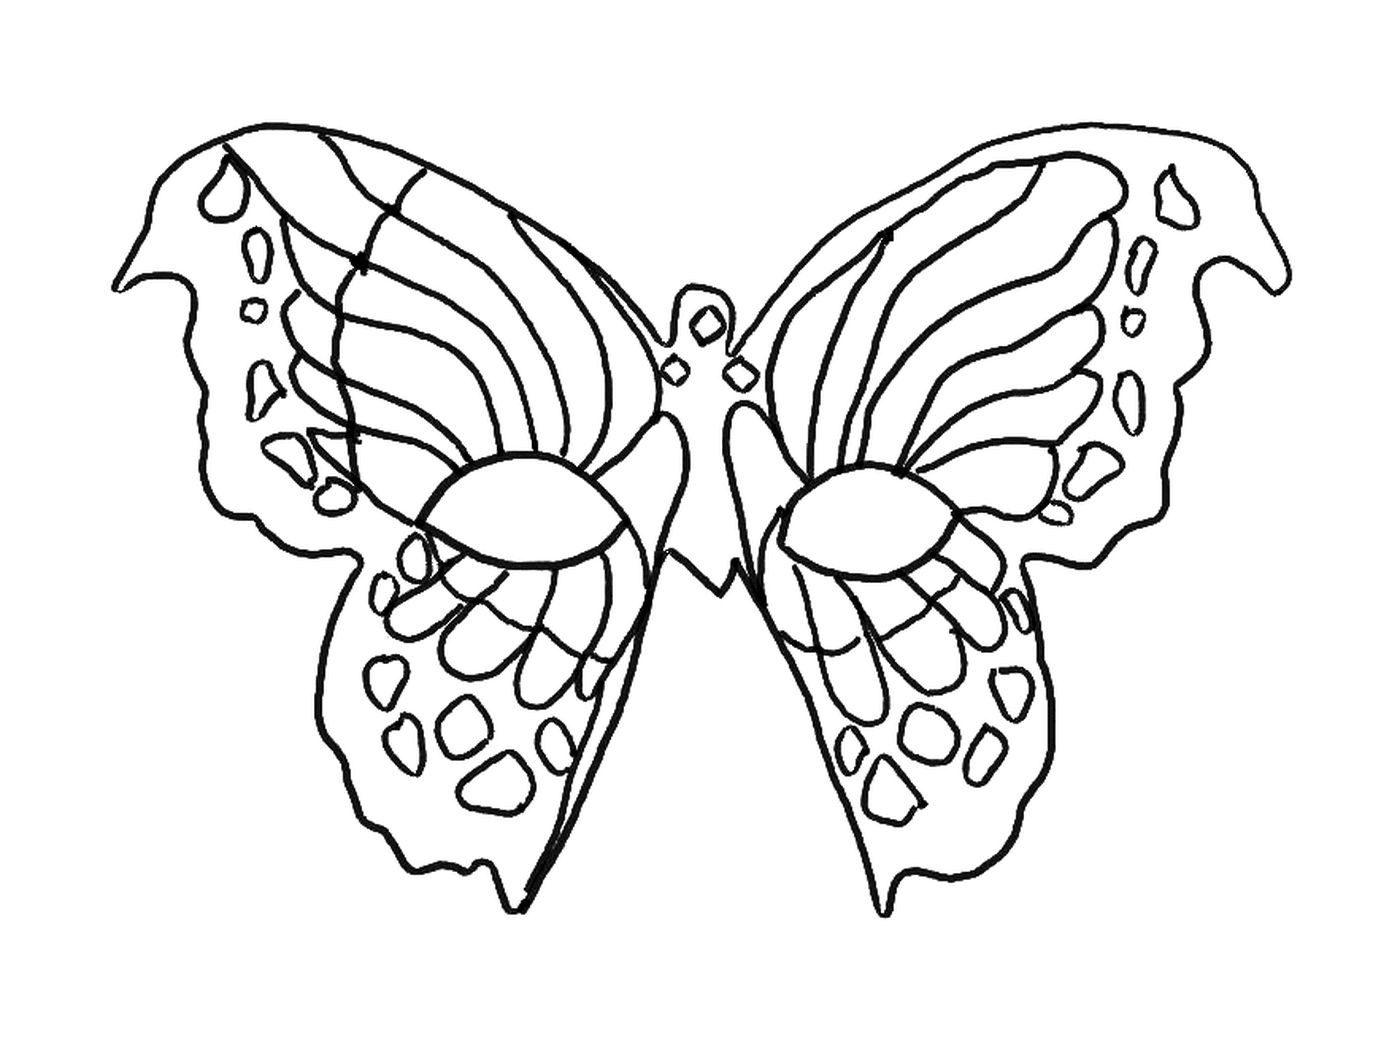  Una maschera di carnevale a forma di farfalla 